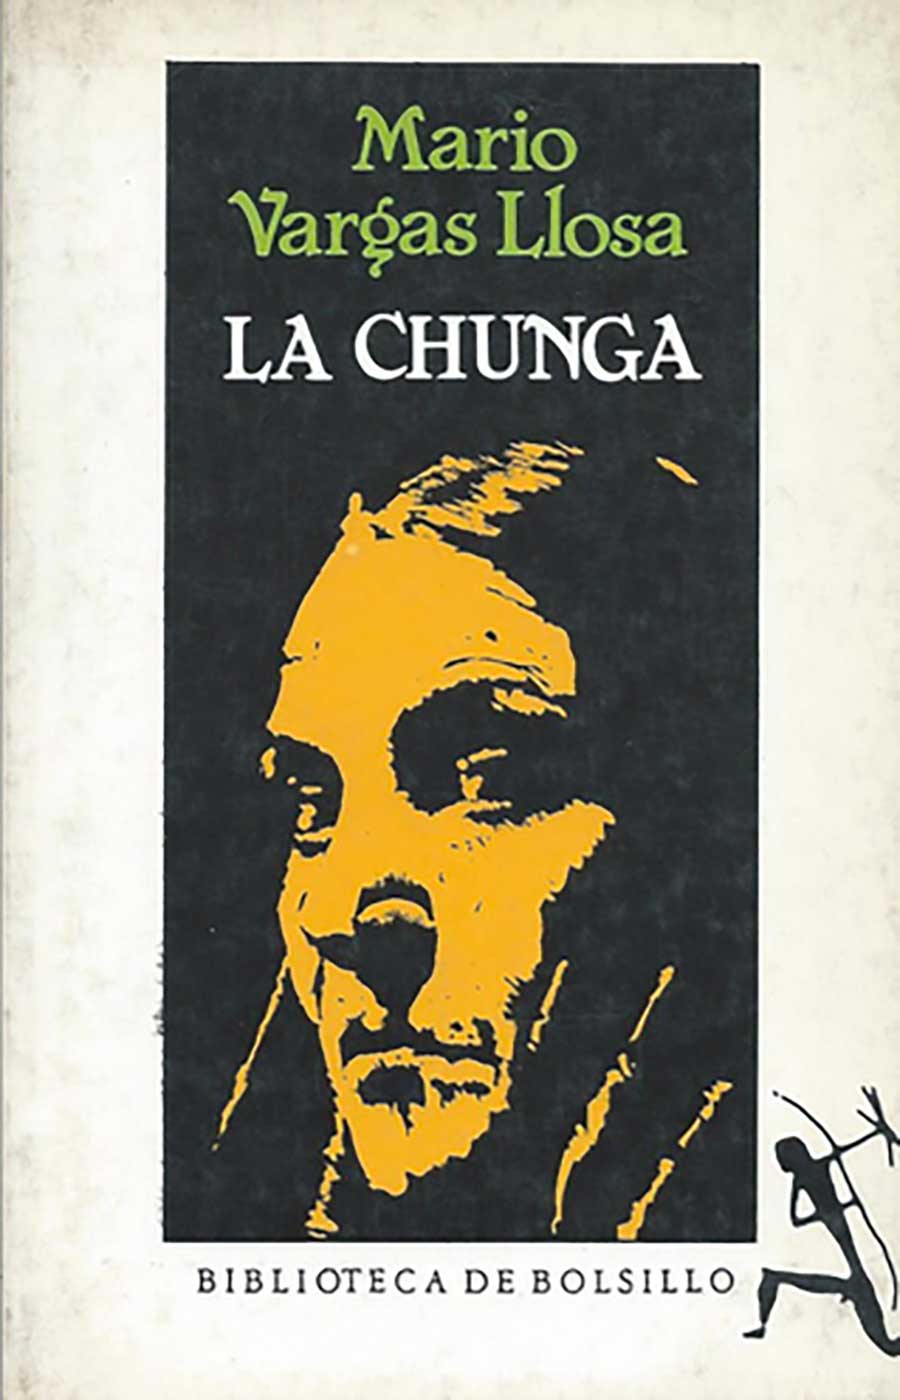 La Chunga es una obra de teatro del escritor peruano y Premio Nobel de Literatura 2010 Mario Vargas Llosa